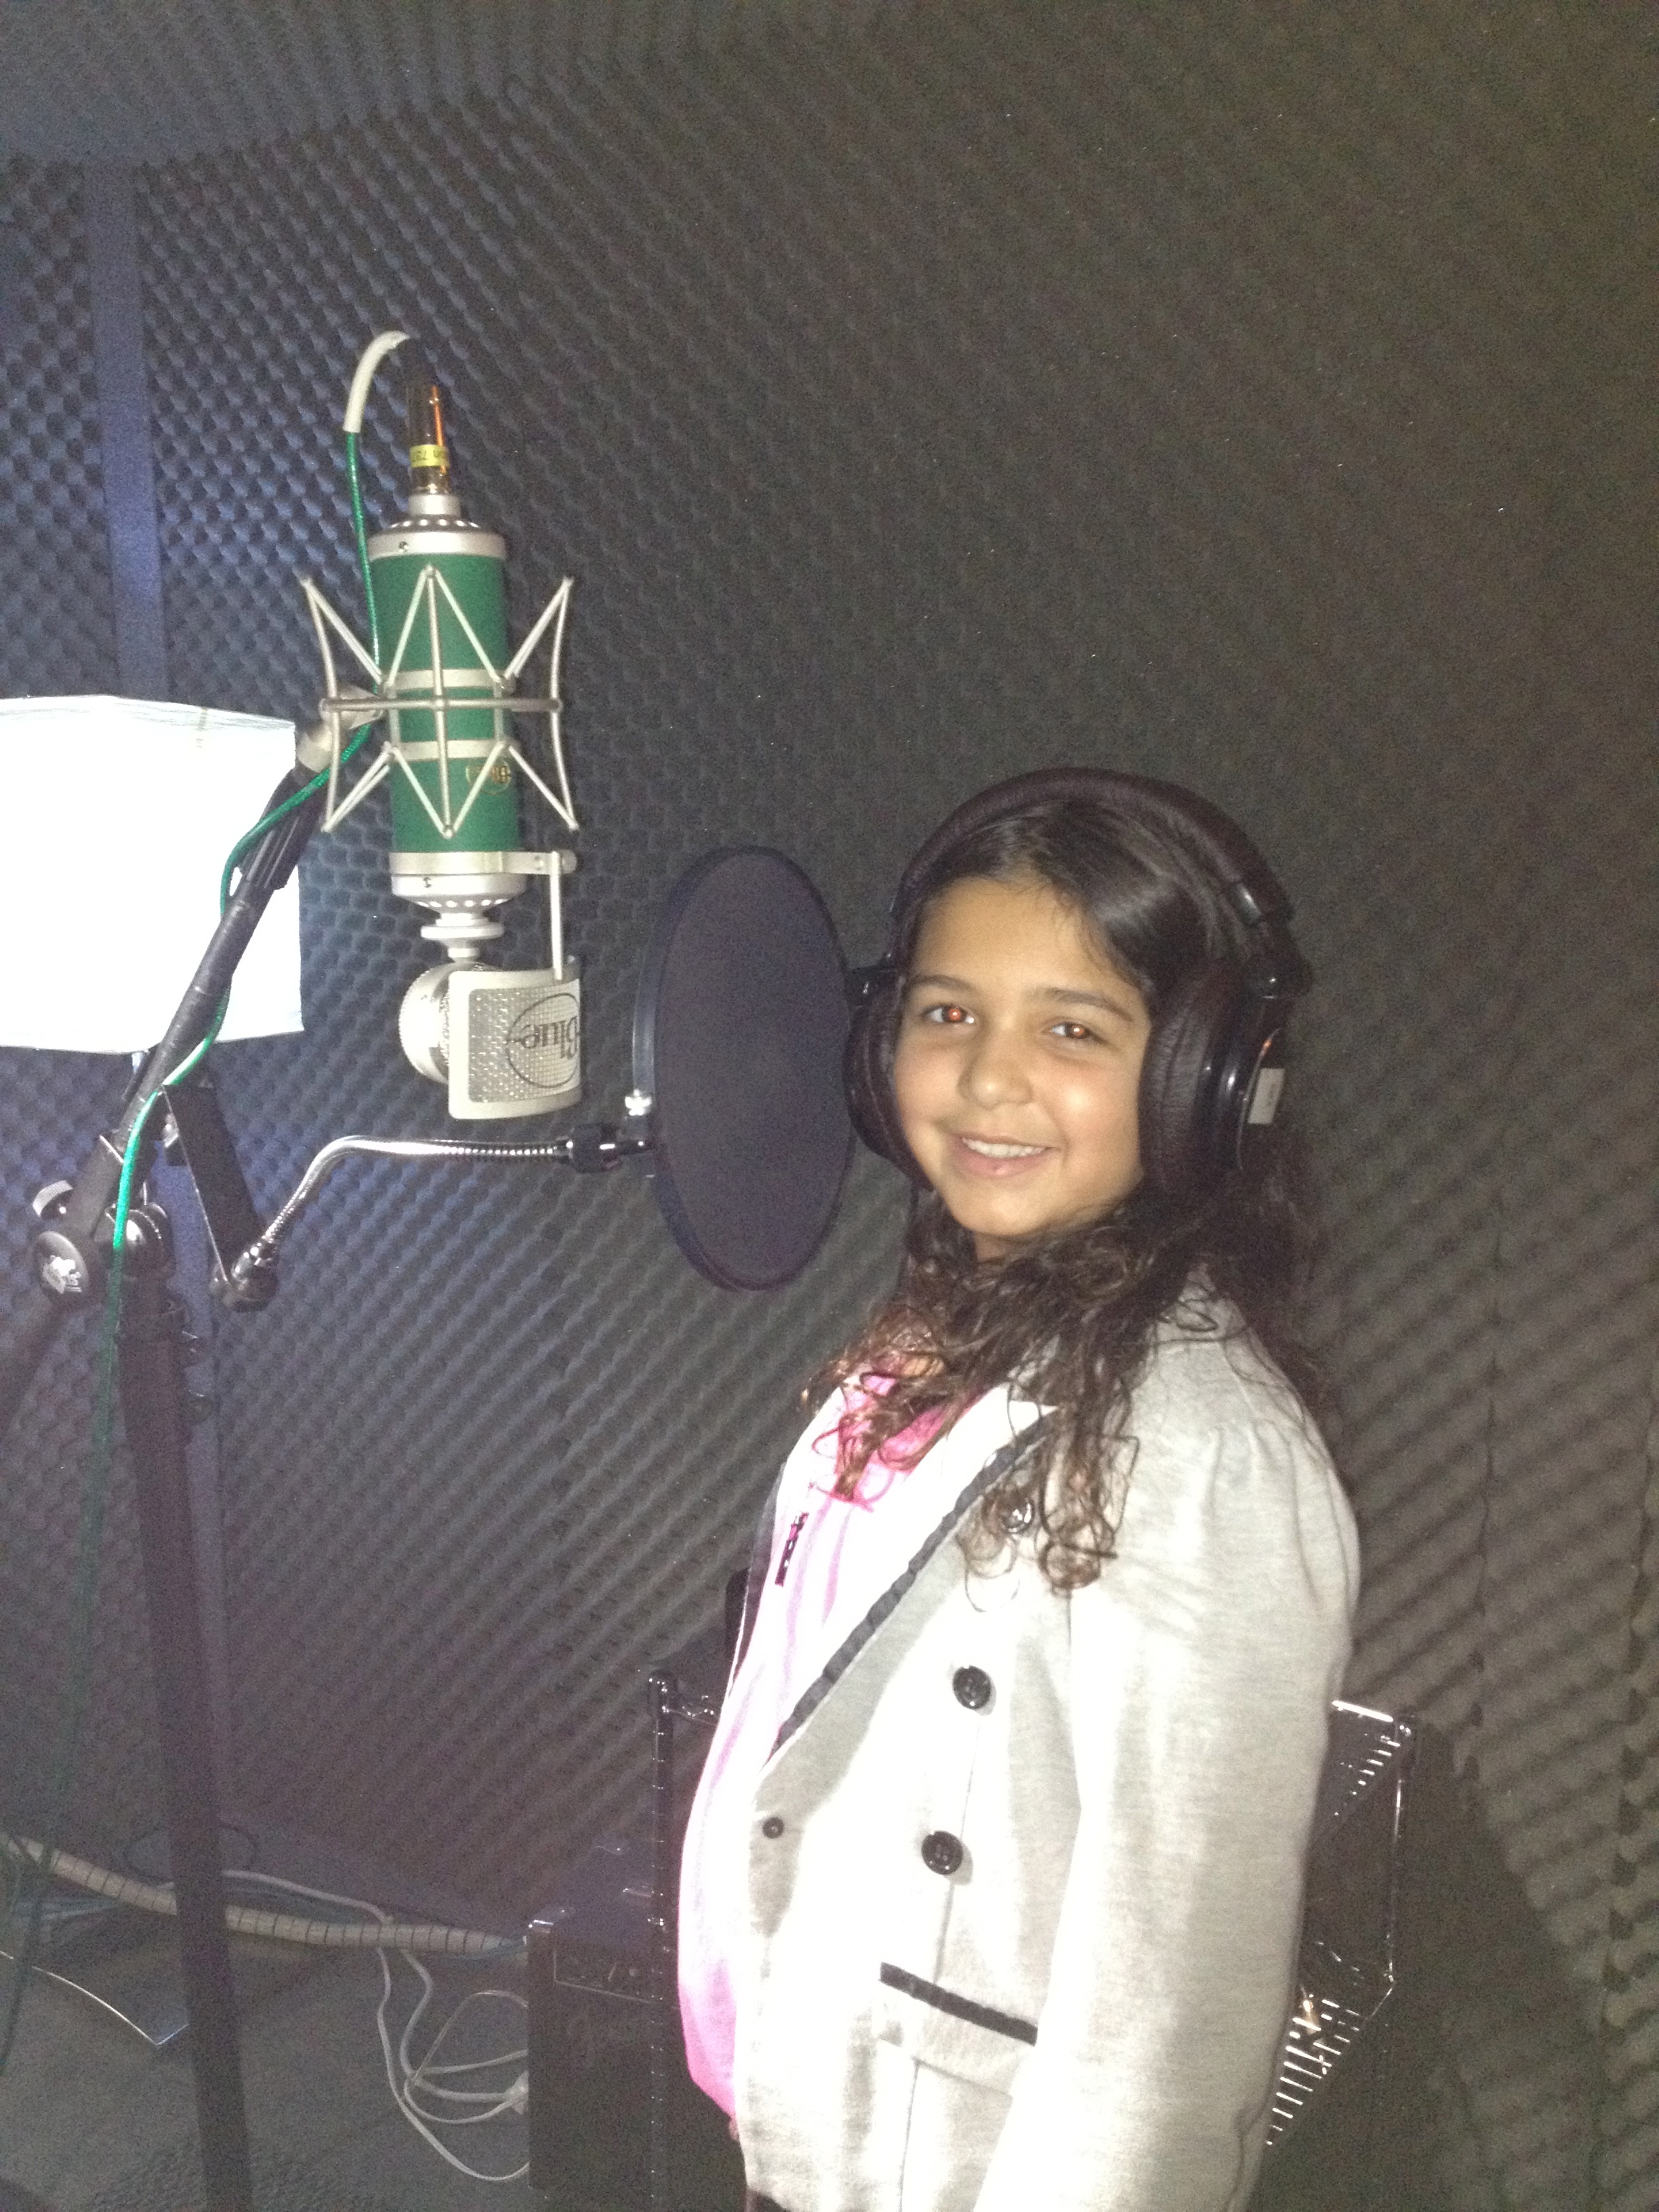 Alexa at the studio singer her song Hurricane